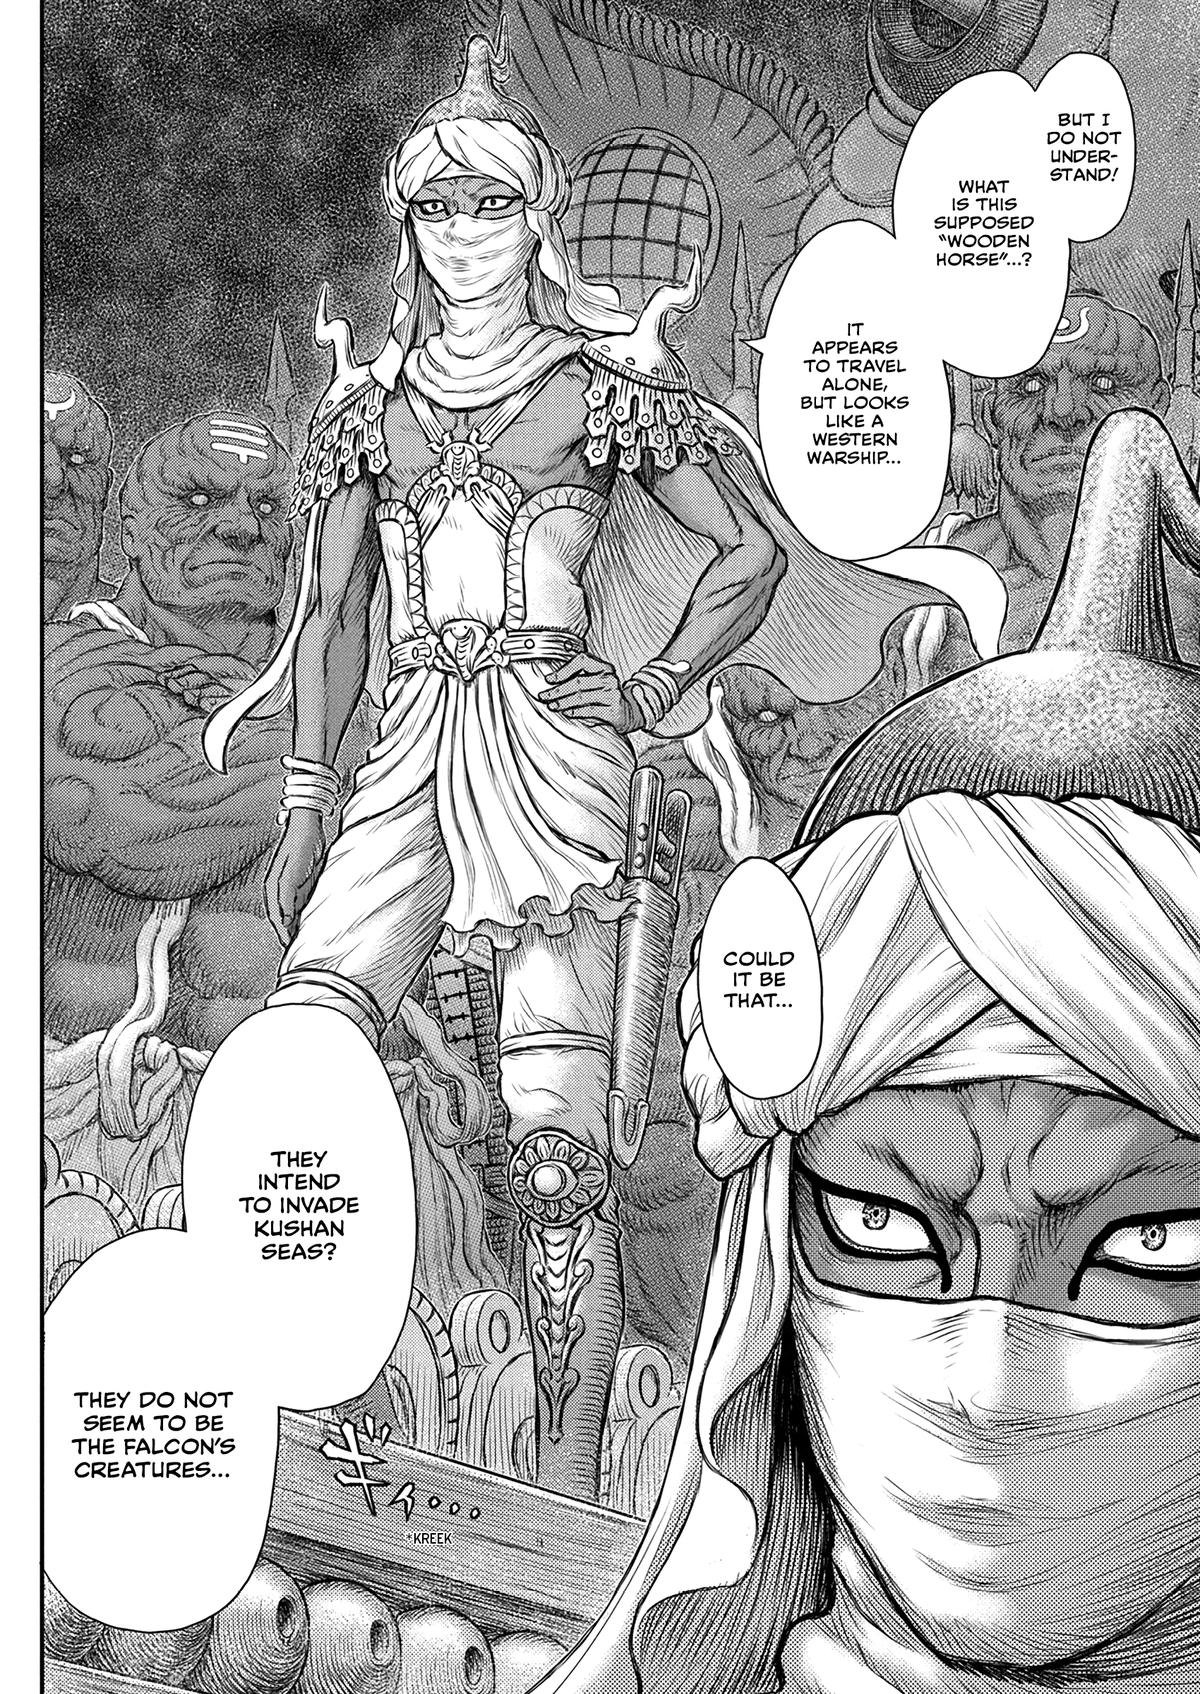 Berserk Manga Chapter 375 image 04